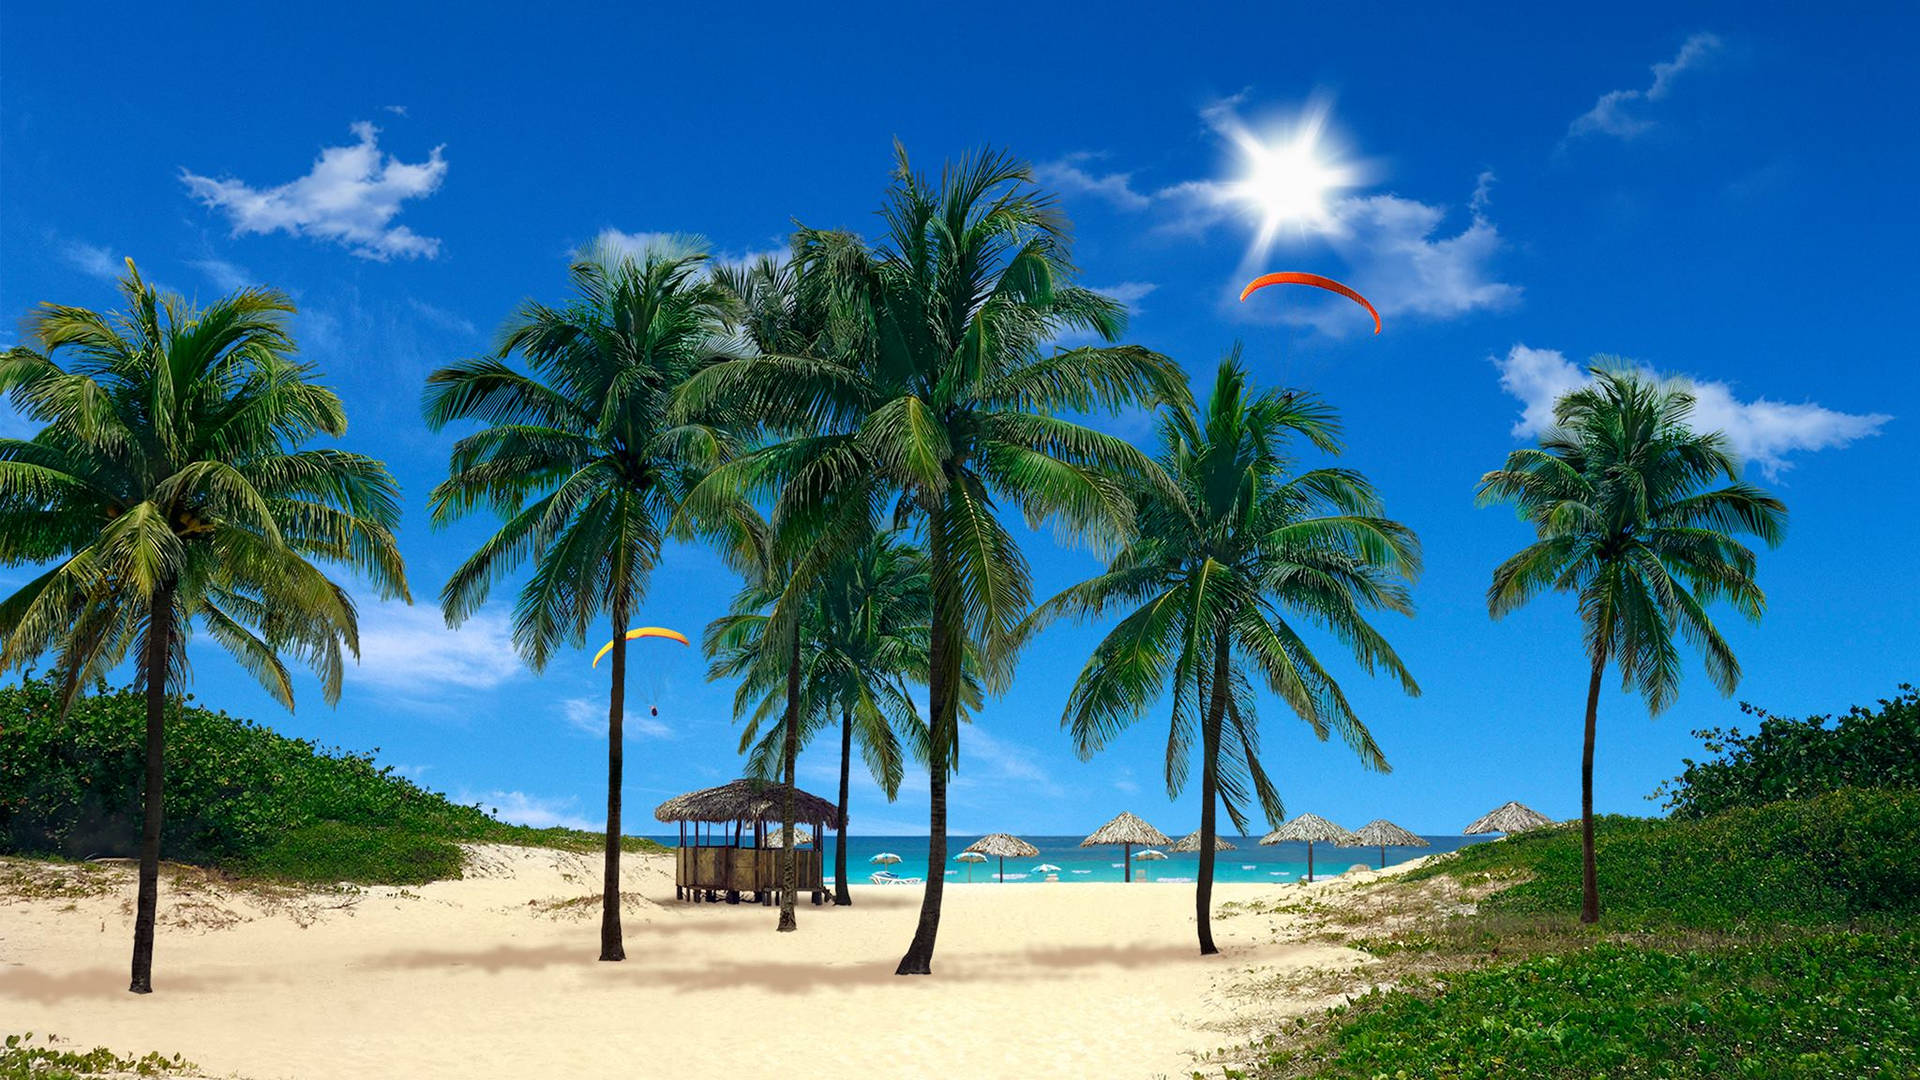 → Palme Beach Live 3D-tapet - Opdag strandens subtropiske skønhed som aldrig før, når du installerer dette full-motion 3D-tapet, der fører dig til en solrig bystrand. Wallpaper